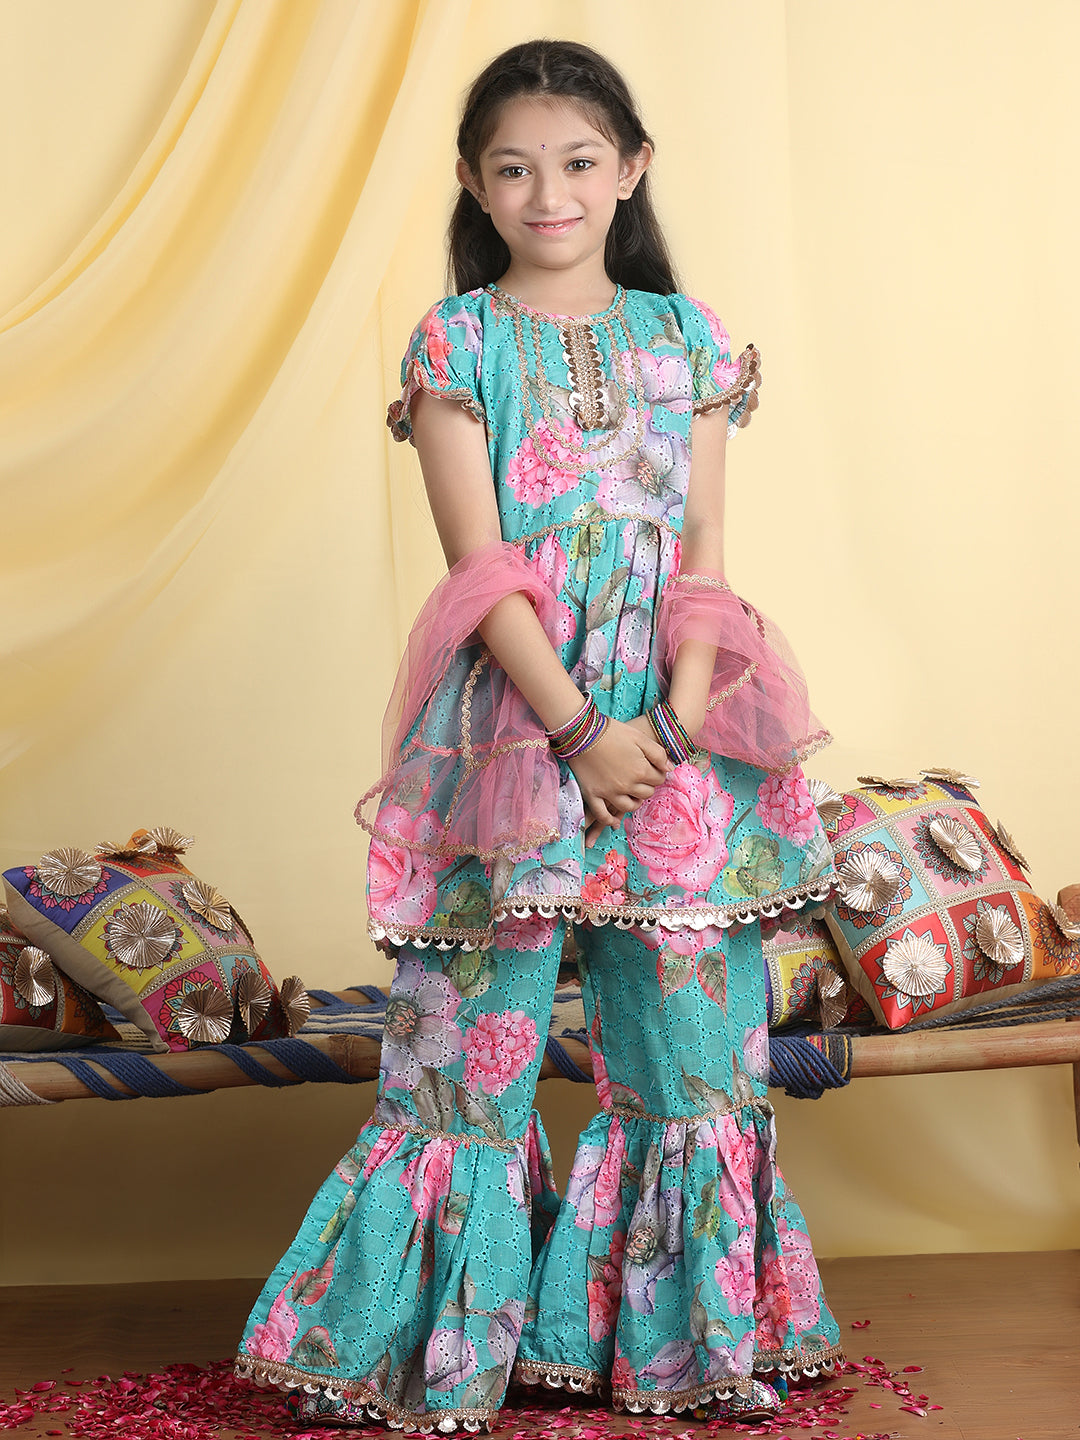 Cutiekins Girls Floral Print Empire Gota Patti Kurta & Sharara With Dupatta -Sea Green & Pink